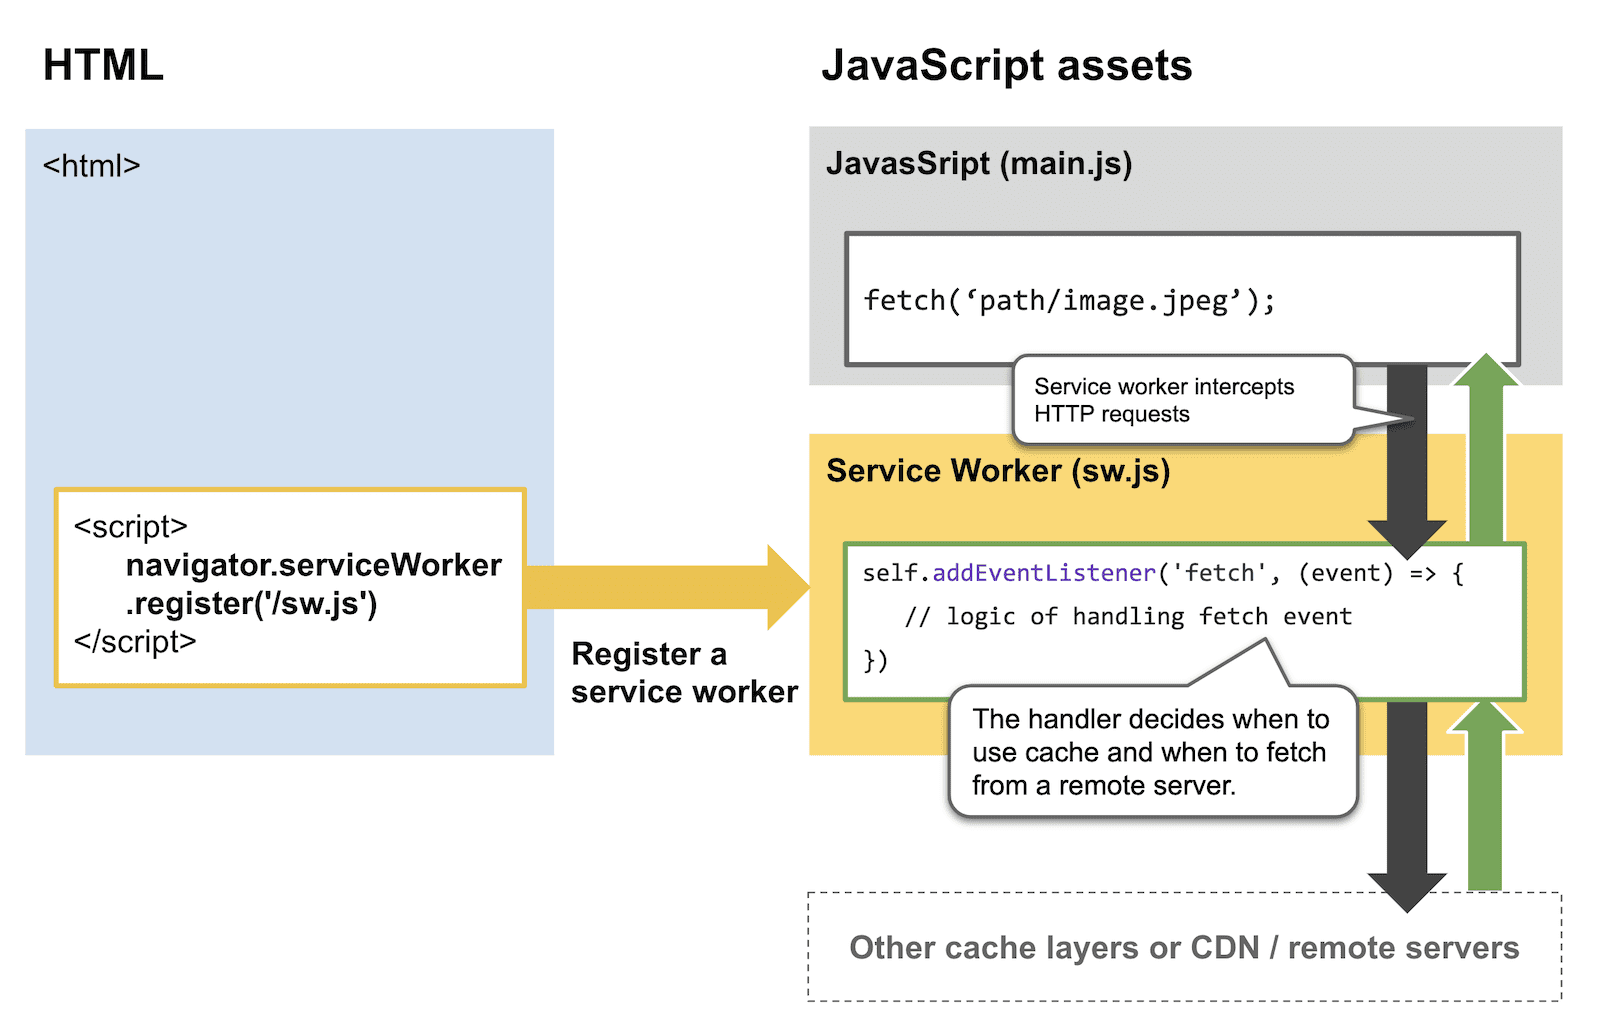 Um diagrama mostrando como os service workers interceptam solicitações HTTP